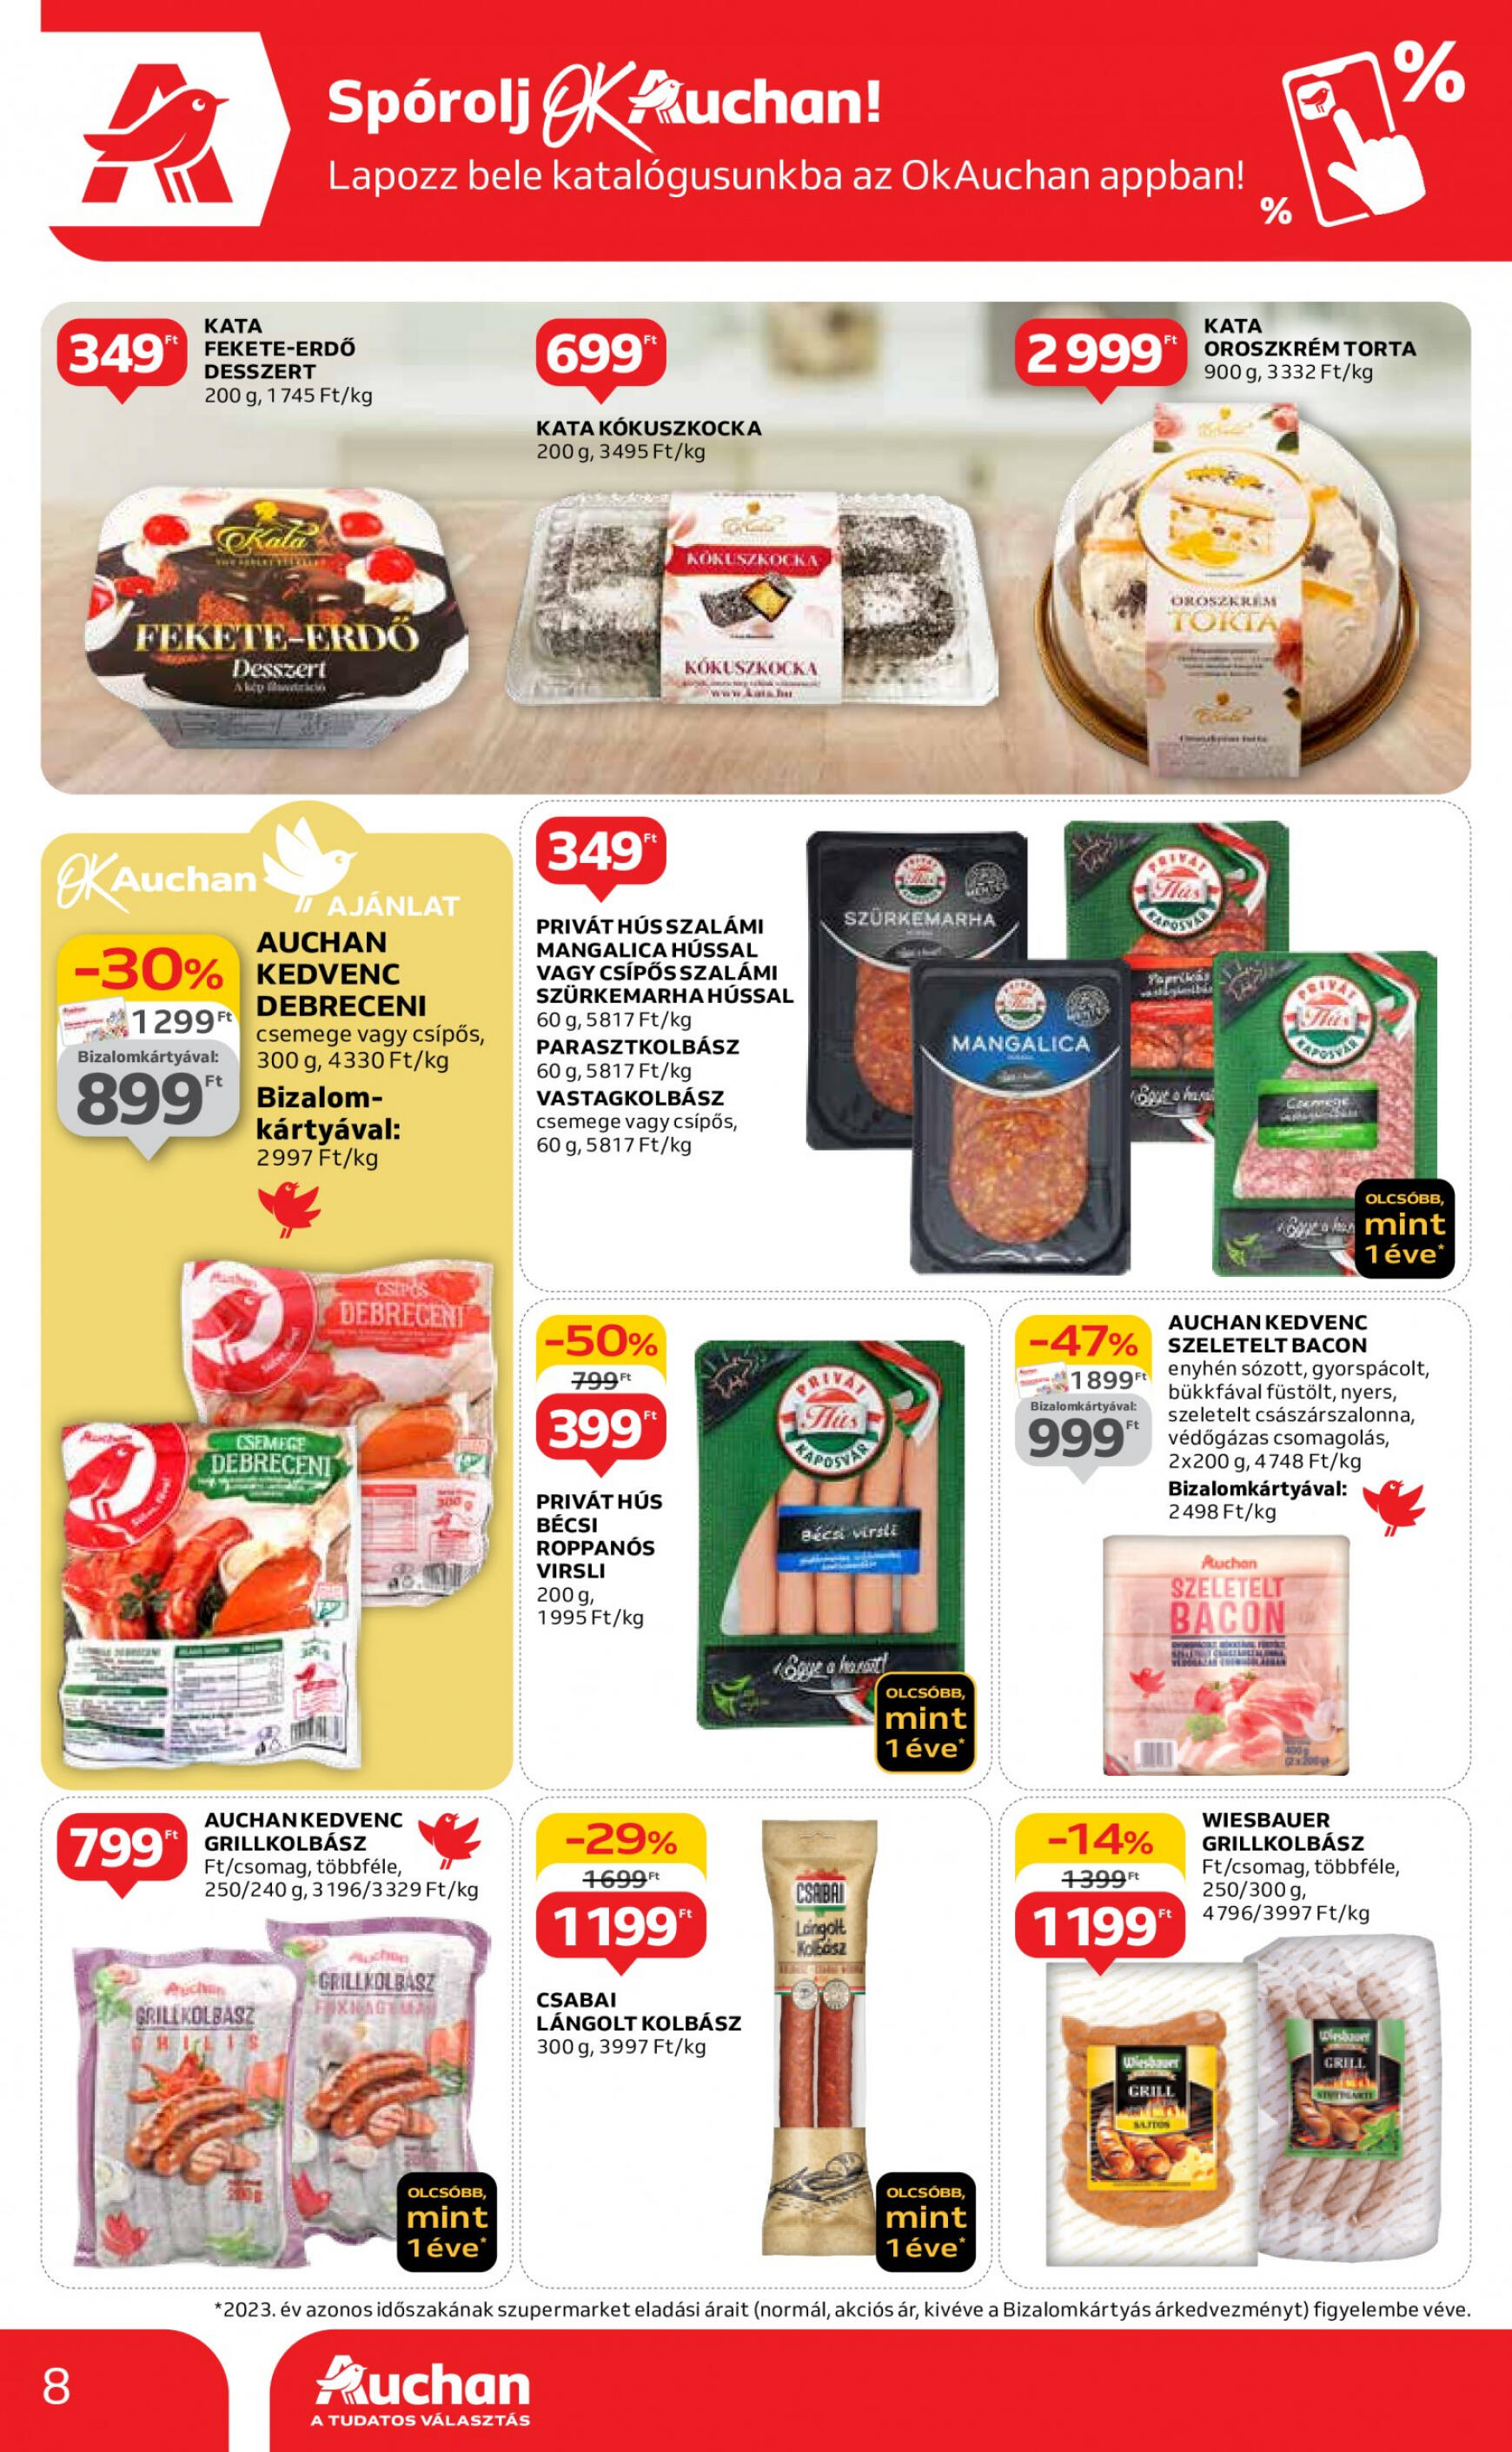 auchan - Aktuális újság Auchan szupermarket 05.02. - 05.08. - page: 8